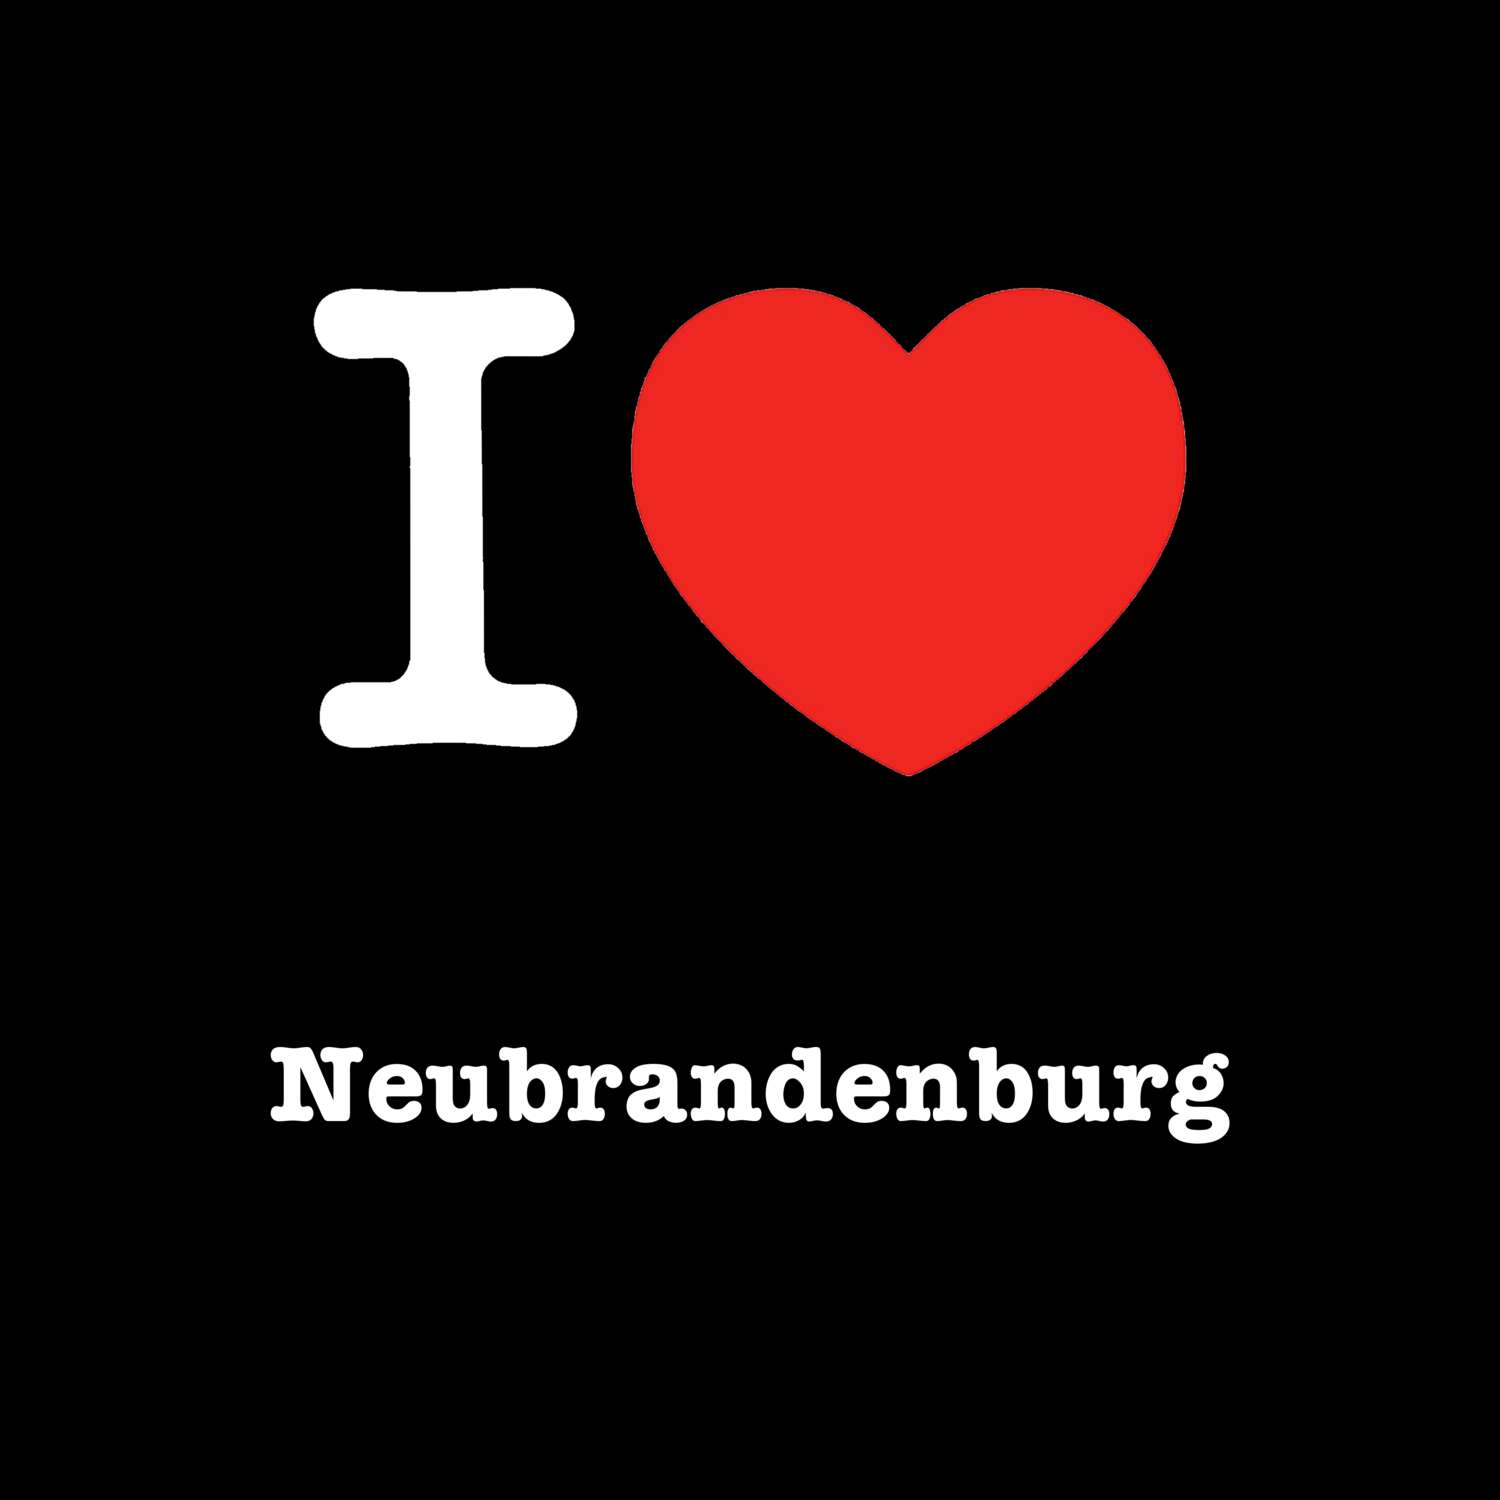 Neubrandenburg T-Shirt »I love«